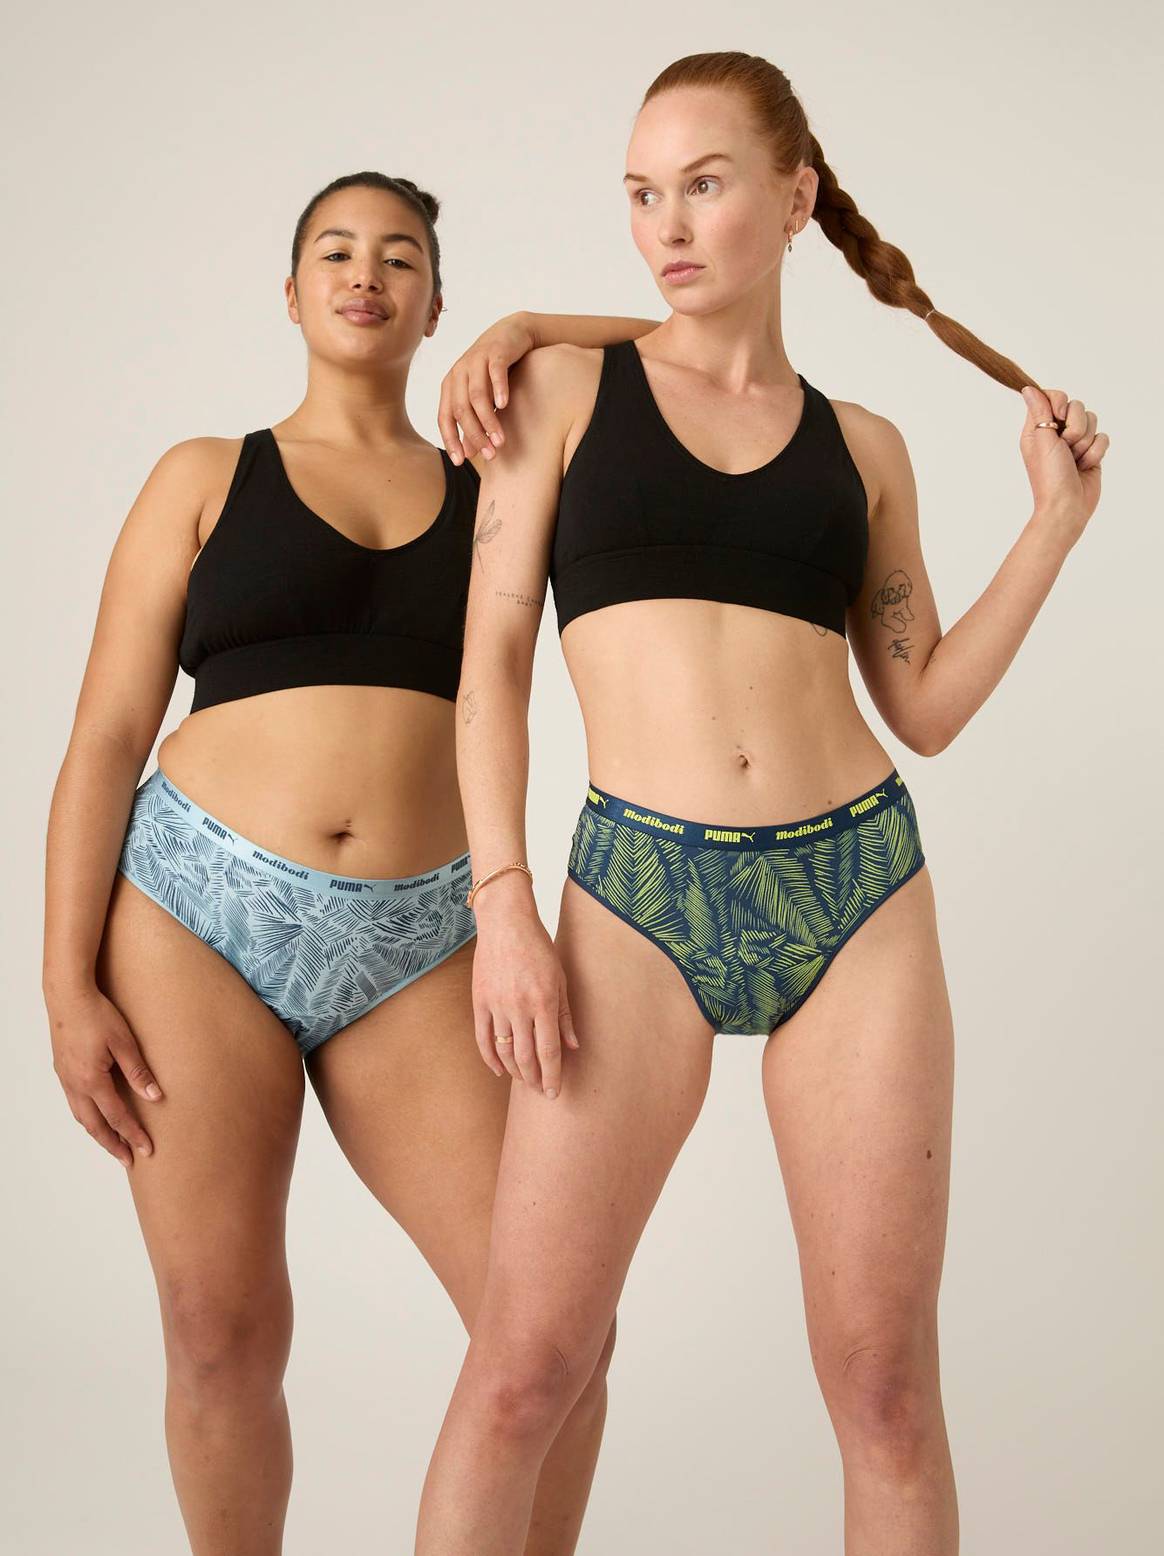 Puma x Modibodi period underwear collaboration.